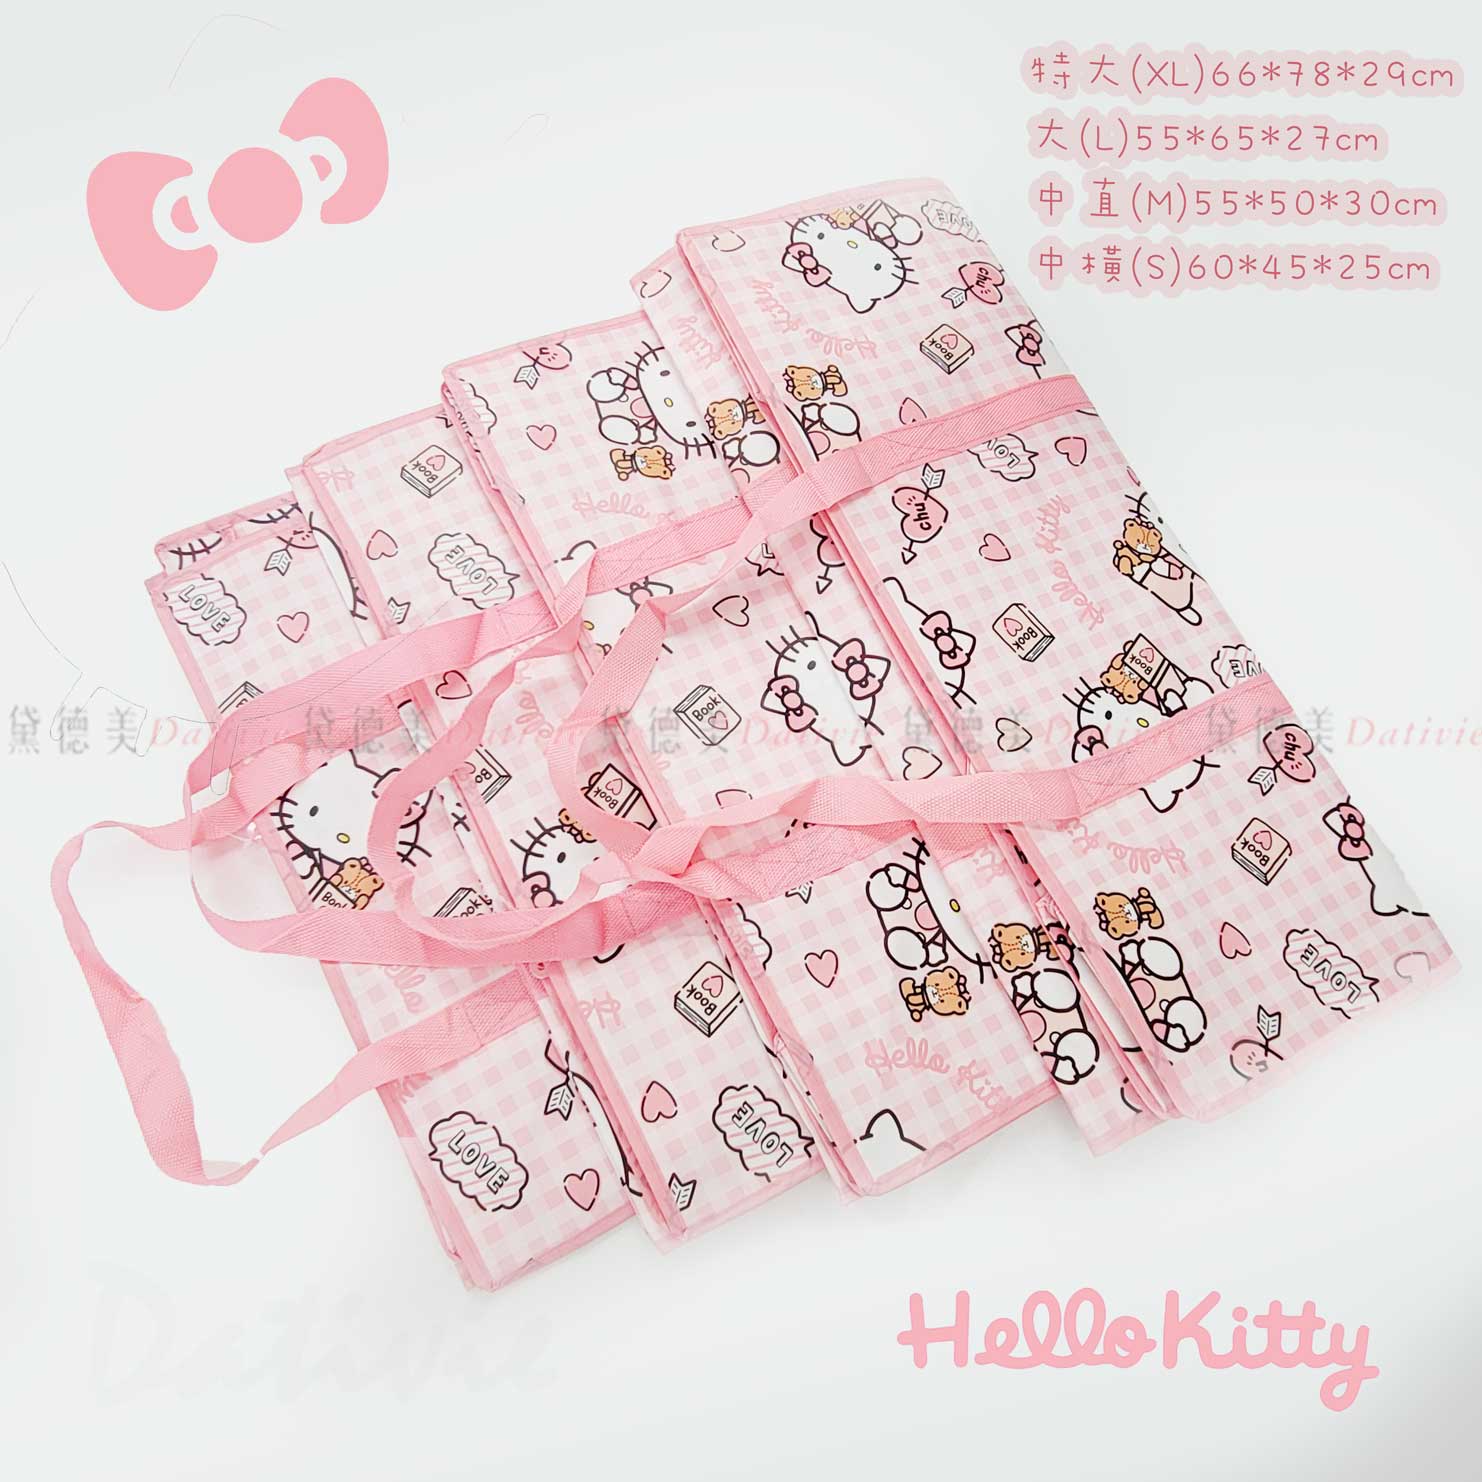 購物袋-HELLO KITTY 三麗鷗 Sanrio 正版授權